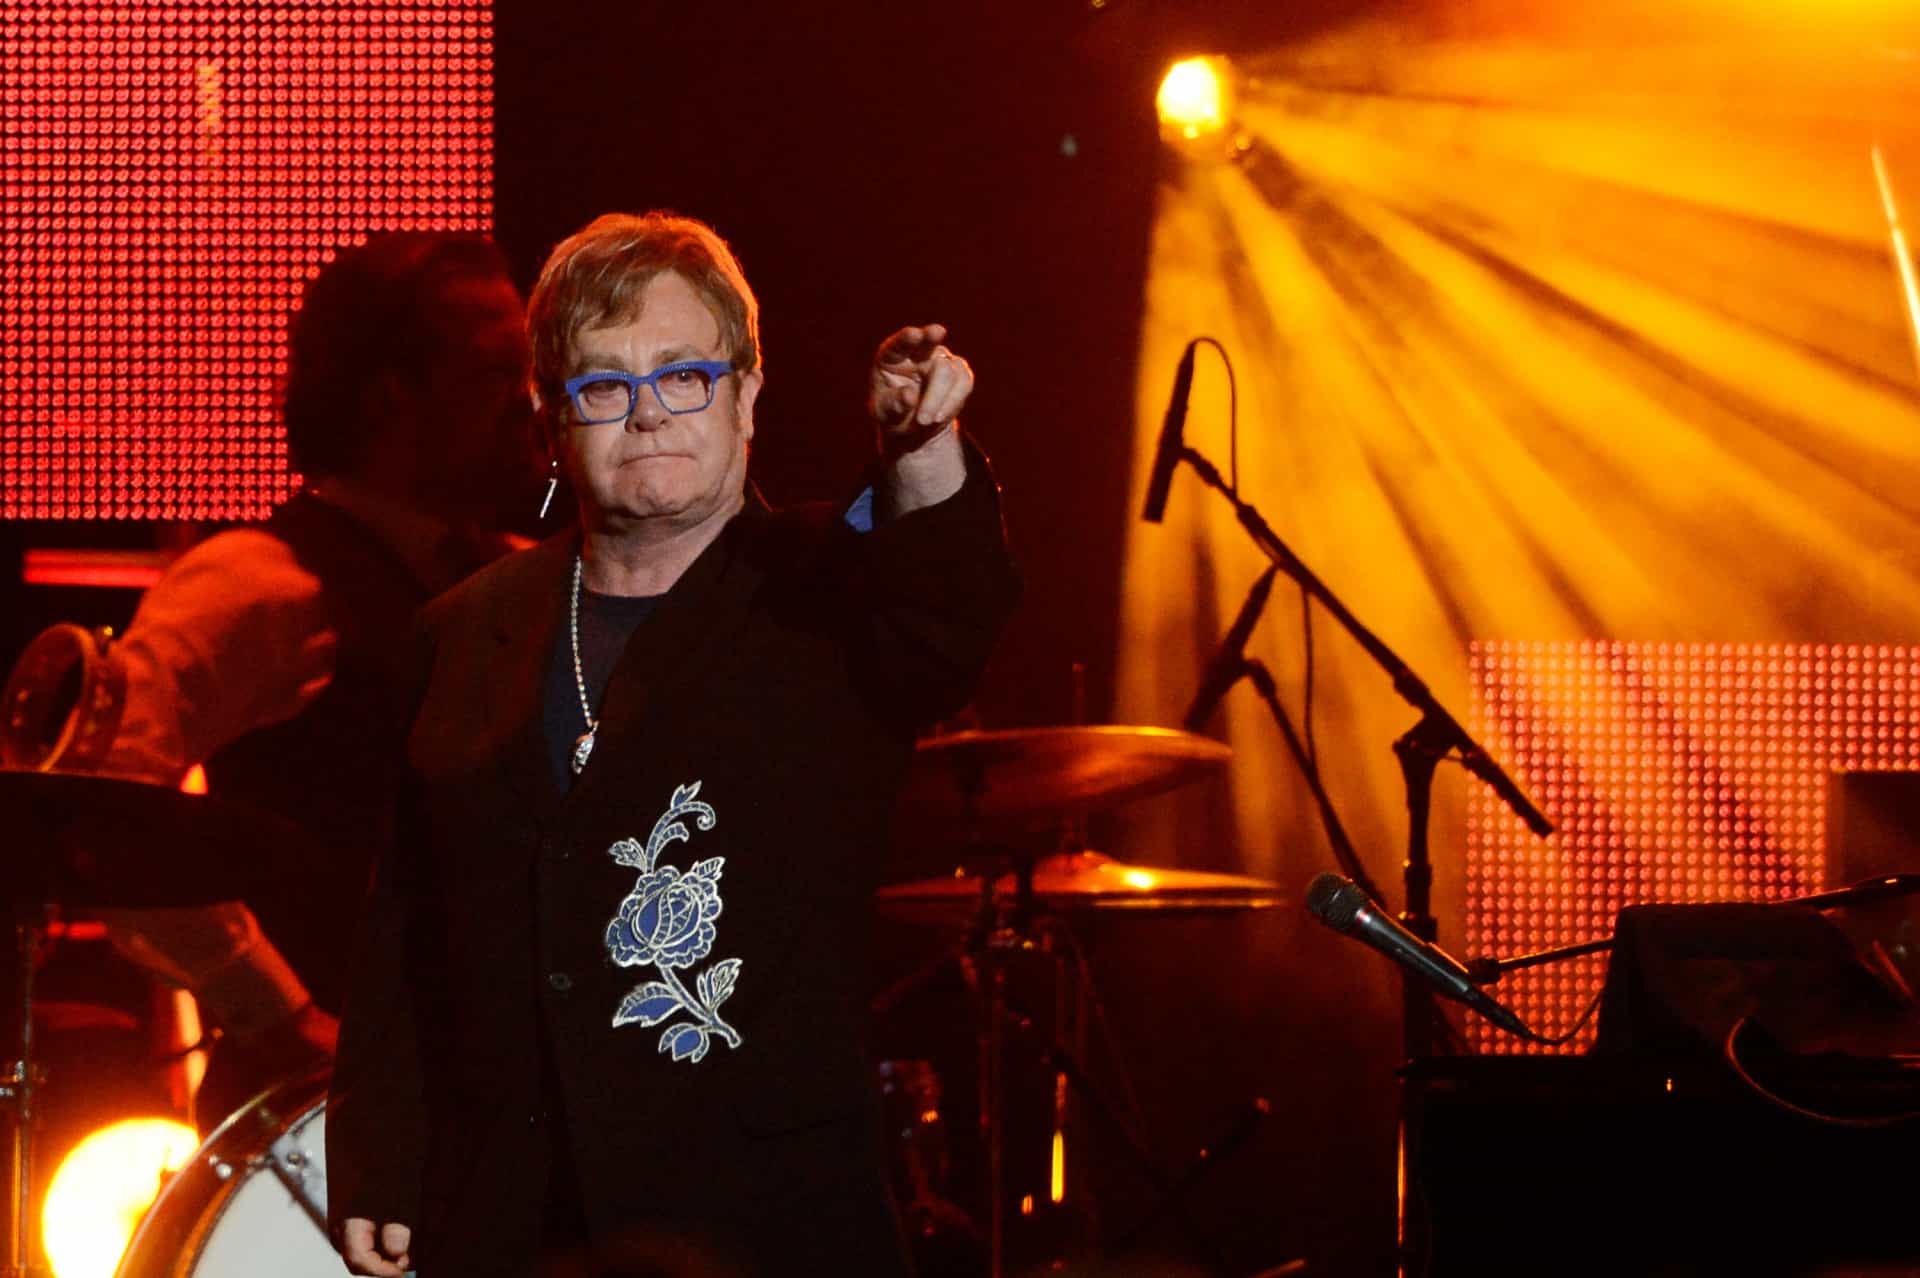 Elton John schrieb unter anderem auch den Soundtrack zu "Der König der Löwen" und komponierte Broadway-Musicals wie "Billy Elliot the Musical".